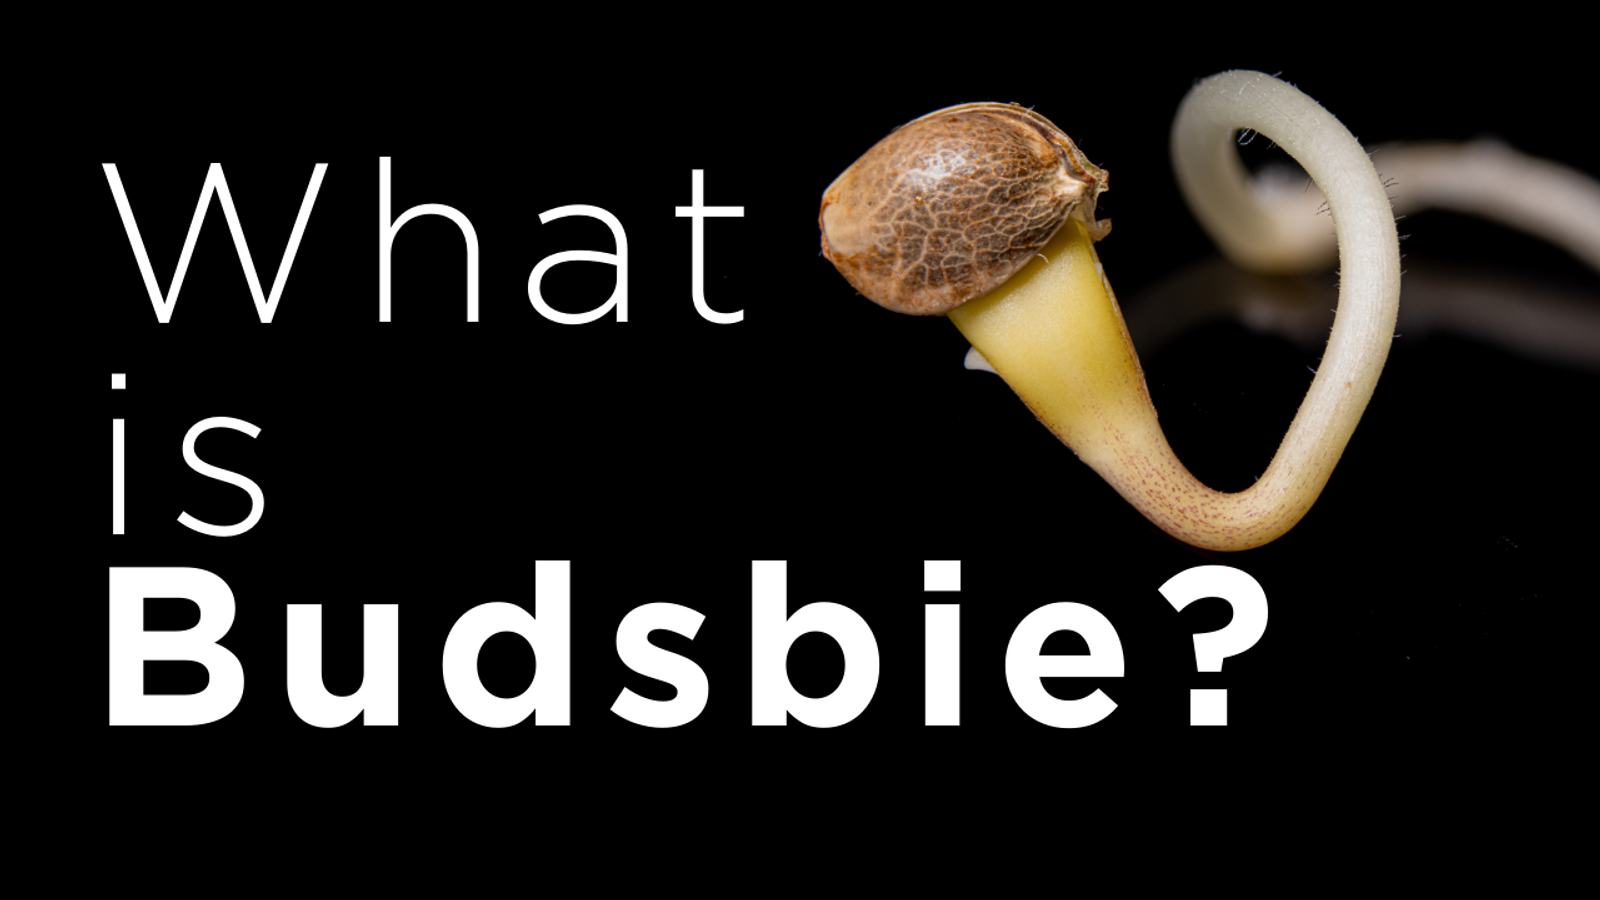 Why Budsbie?